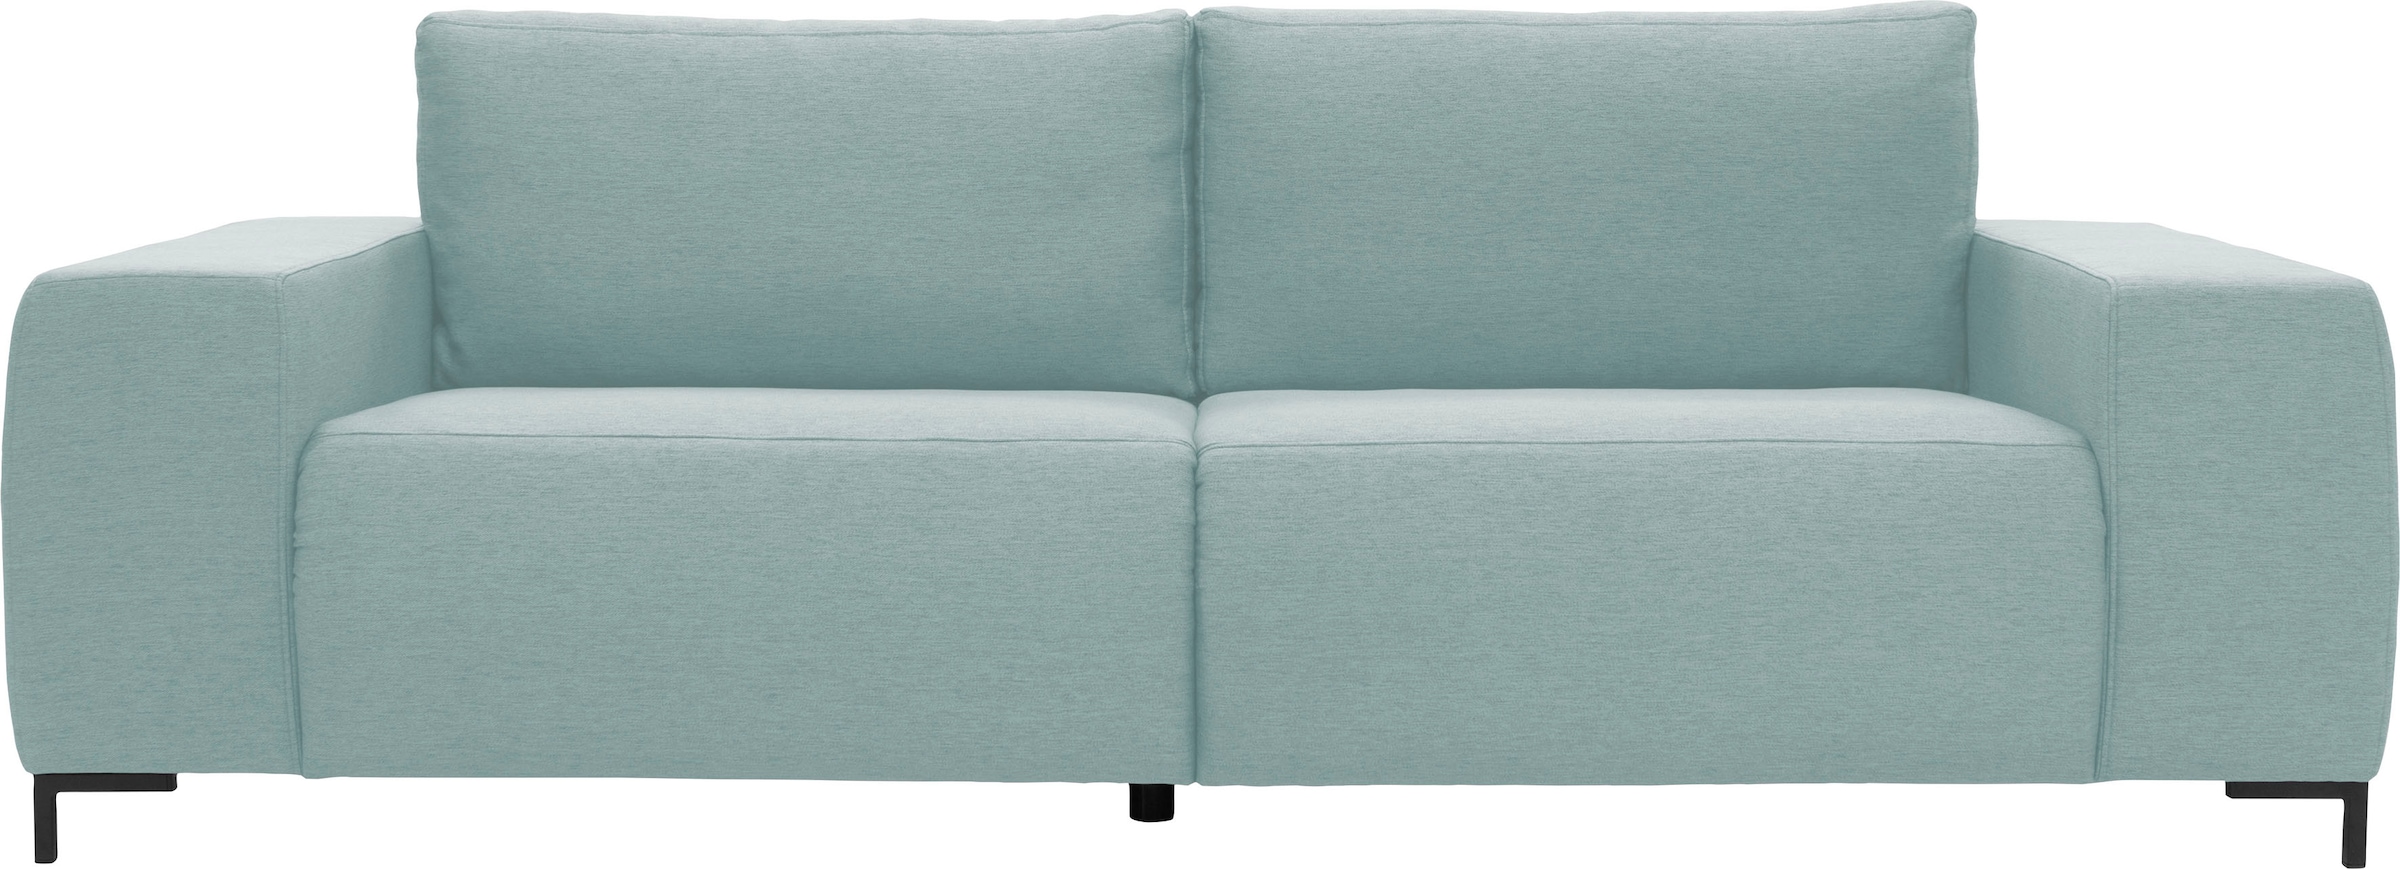 Big-Sofa »Looks VI«, gerade Linien, in 2 Bezugsqualitäten